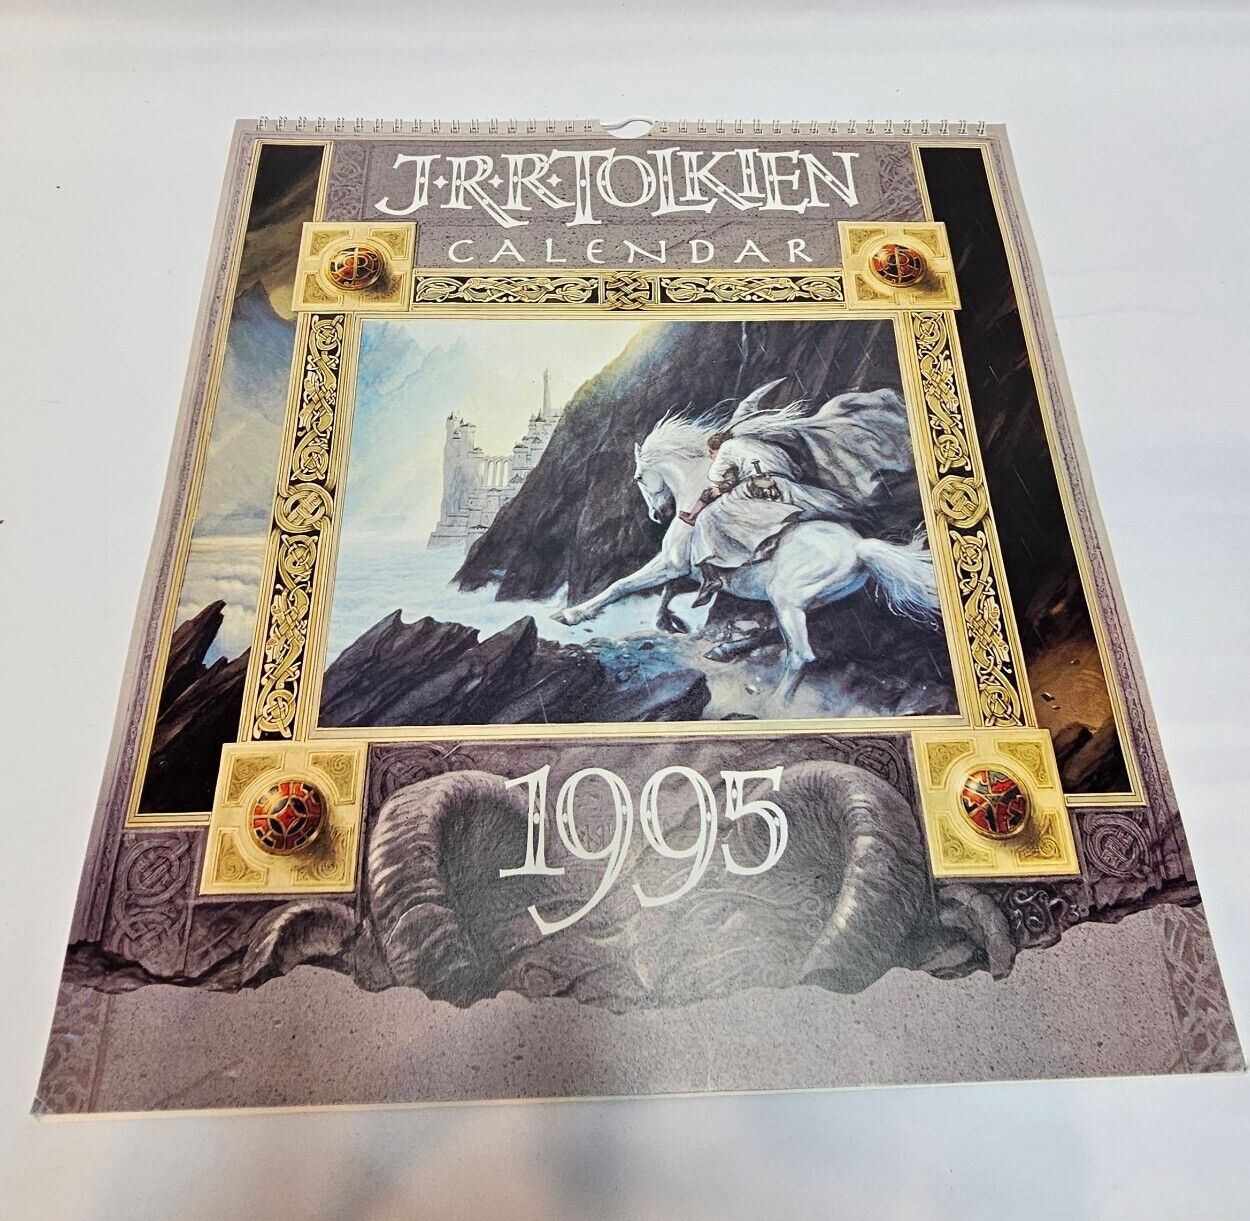 J.R.R. Tolkien Calendar 1995 Lord of the Rings By John Howe Art Spiral 